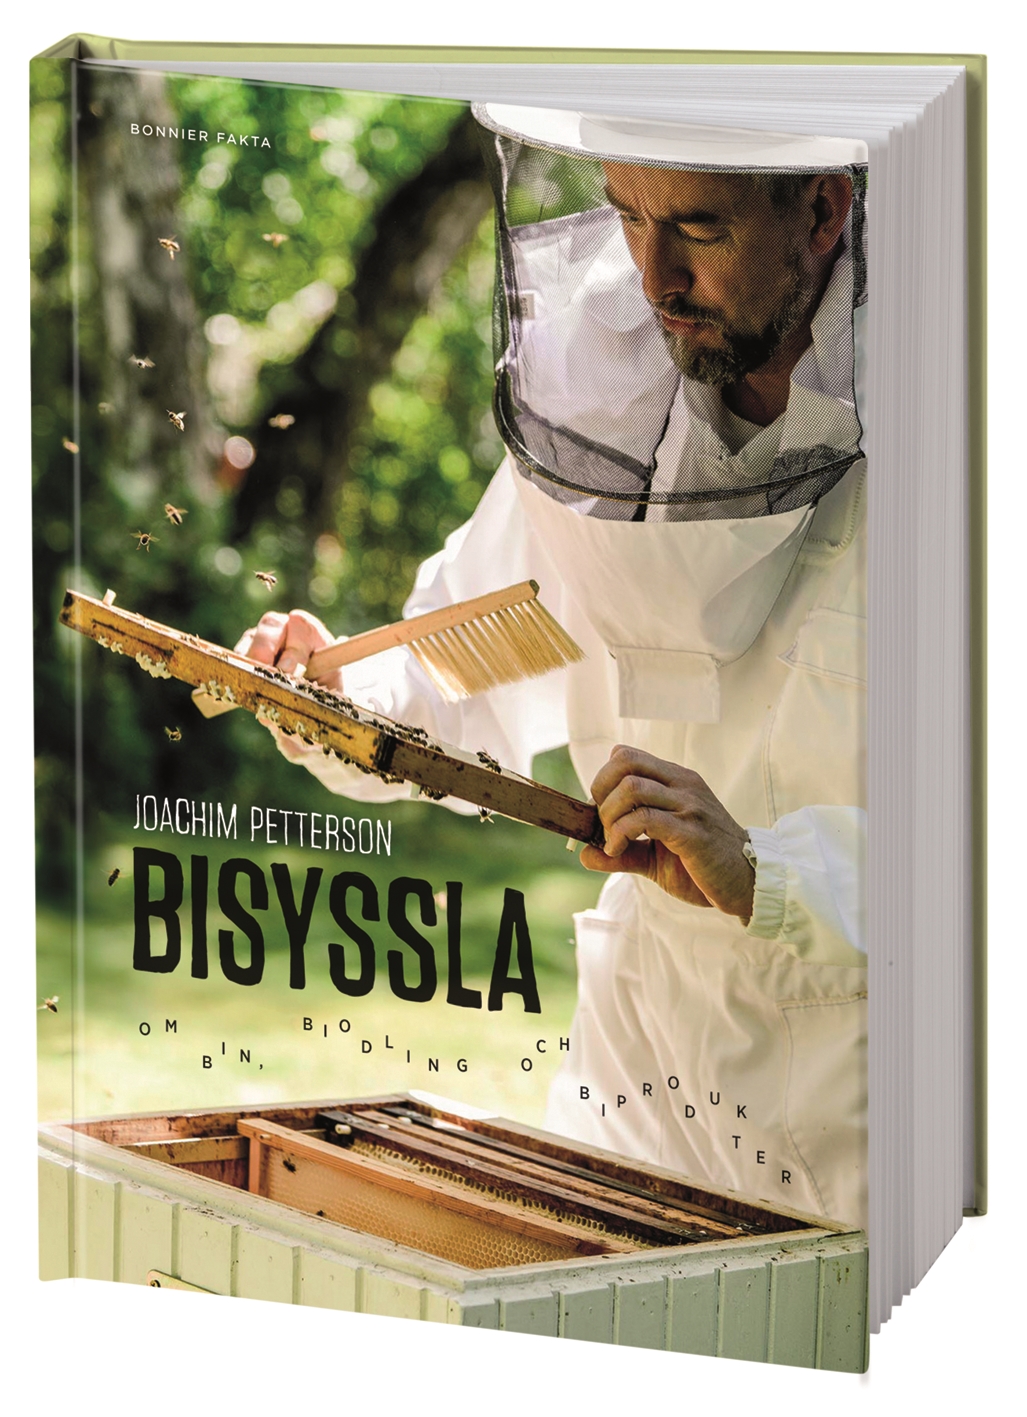 Bisyssla - Bin, Biodling Och Biprodukter